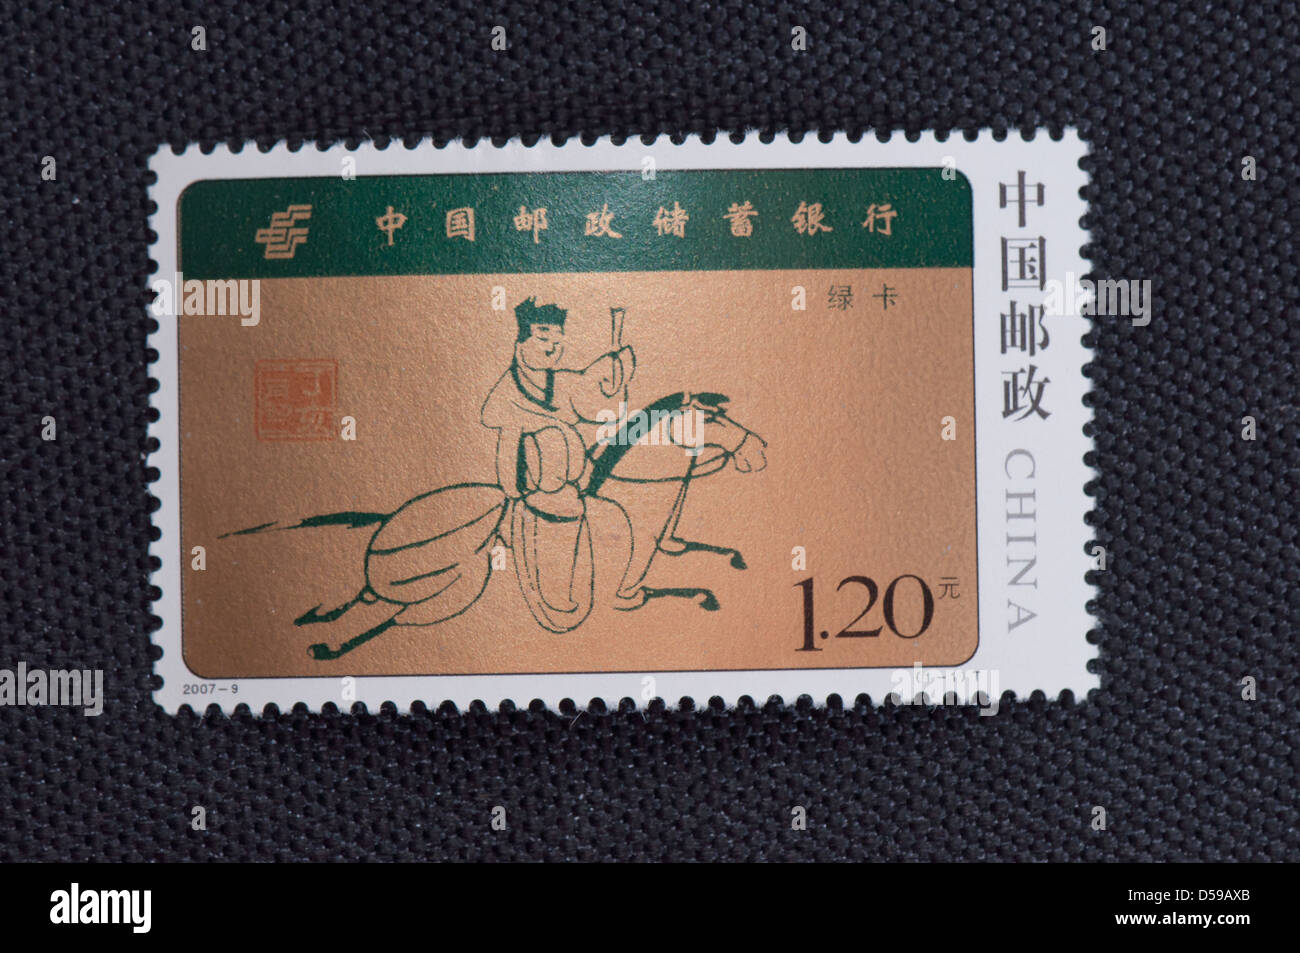 CHINE - VERS 2007 : un timbre imprimé en Chine montre 2007-9 China postal Savings Bank, vers 2007 Banque D'Images